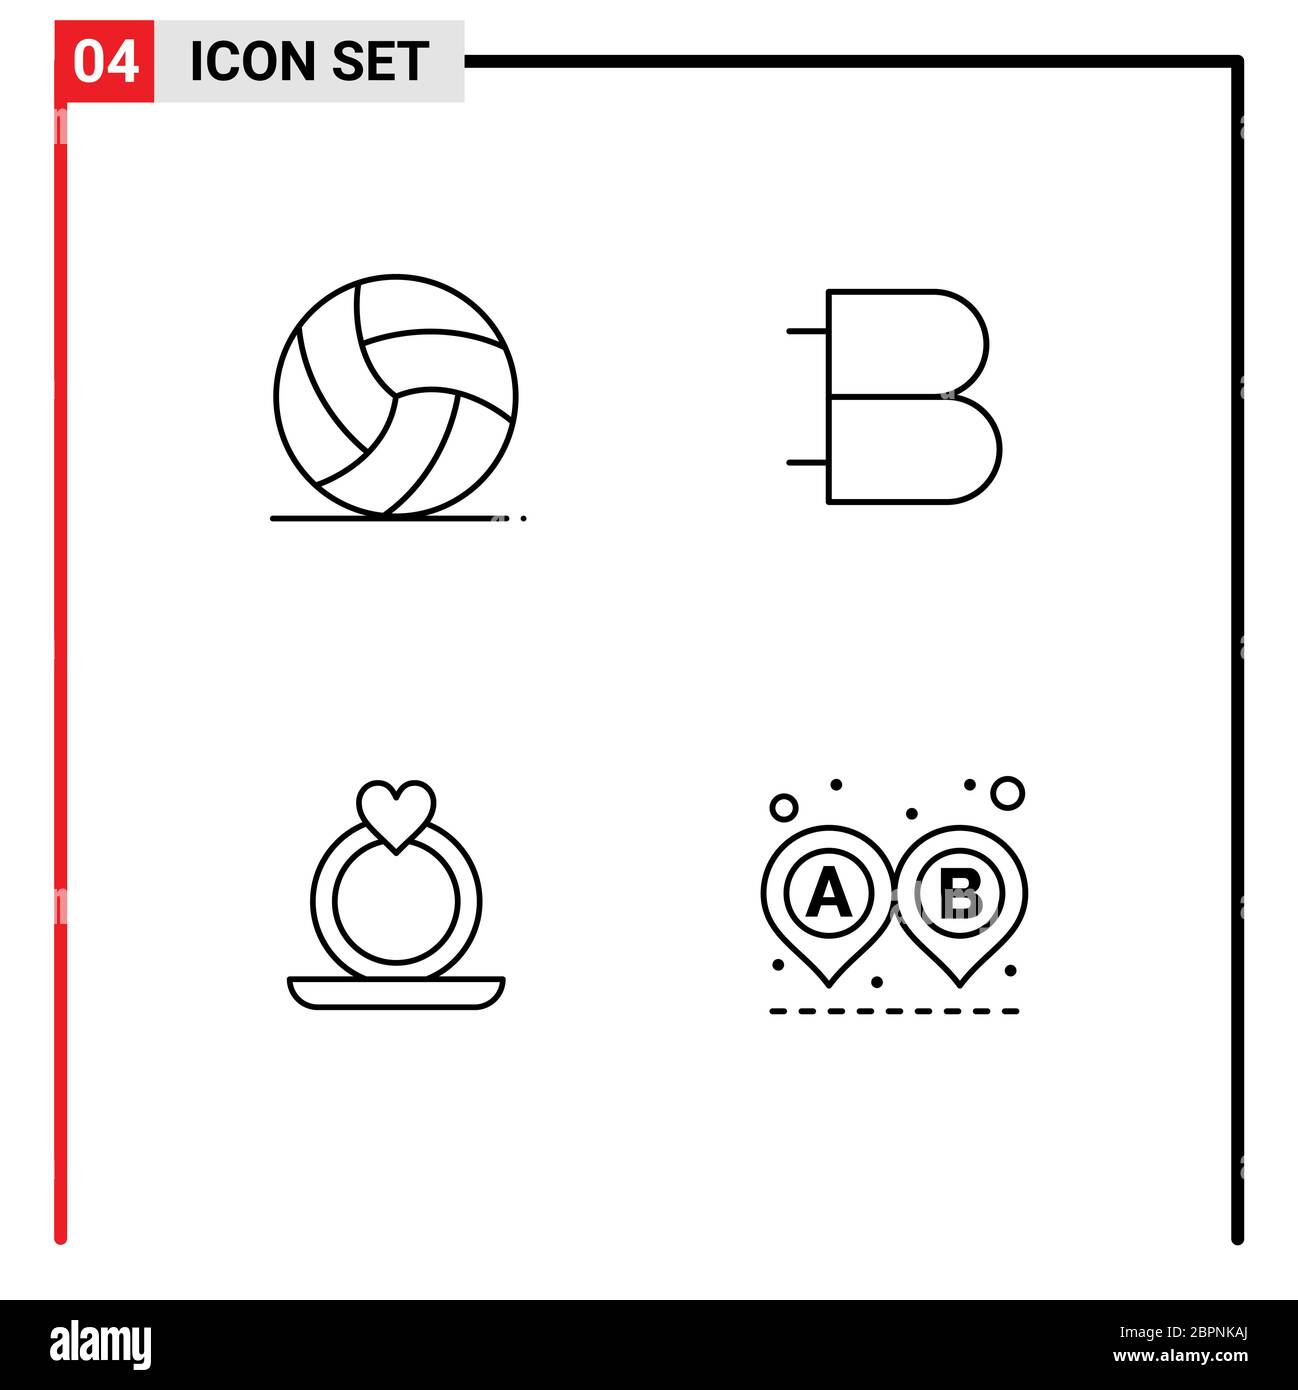 Pack de 4 colores planos creativos Filledline de fútbol, anillo, deporte, cripto, propuesta elementos de diseño vectorial editables Ilustración del Vector